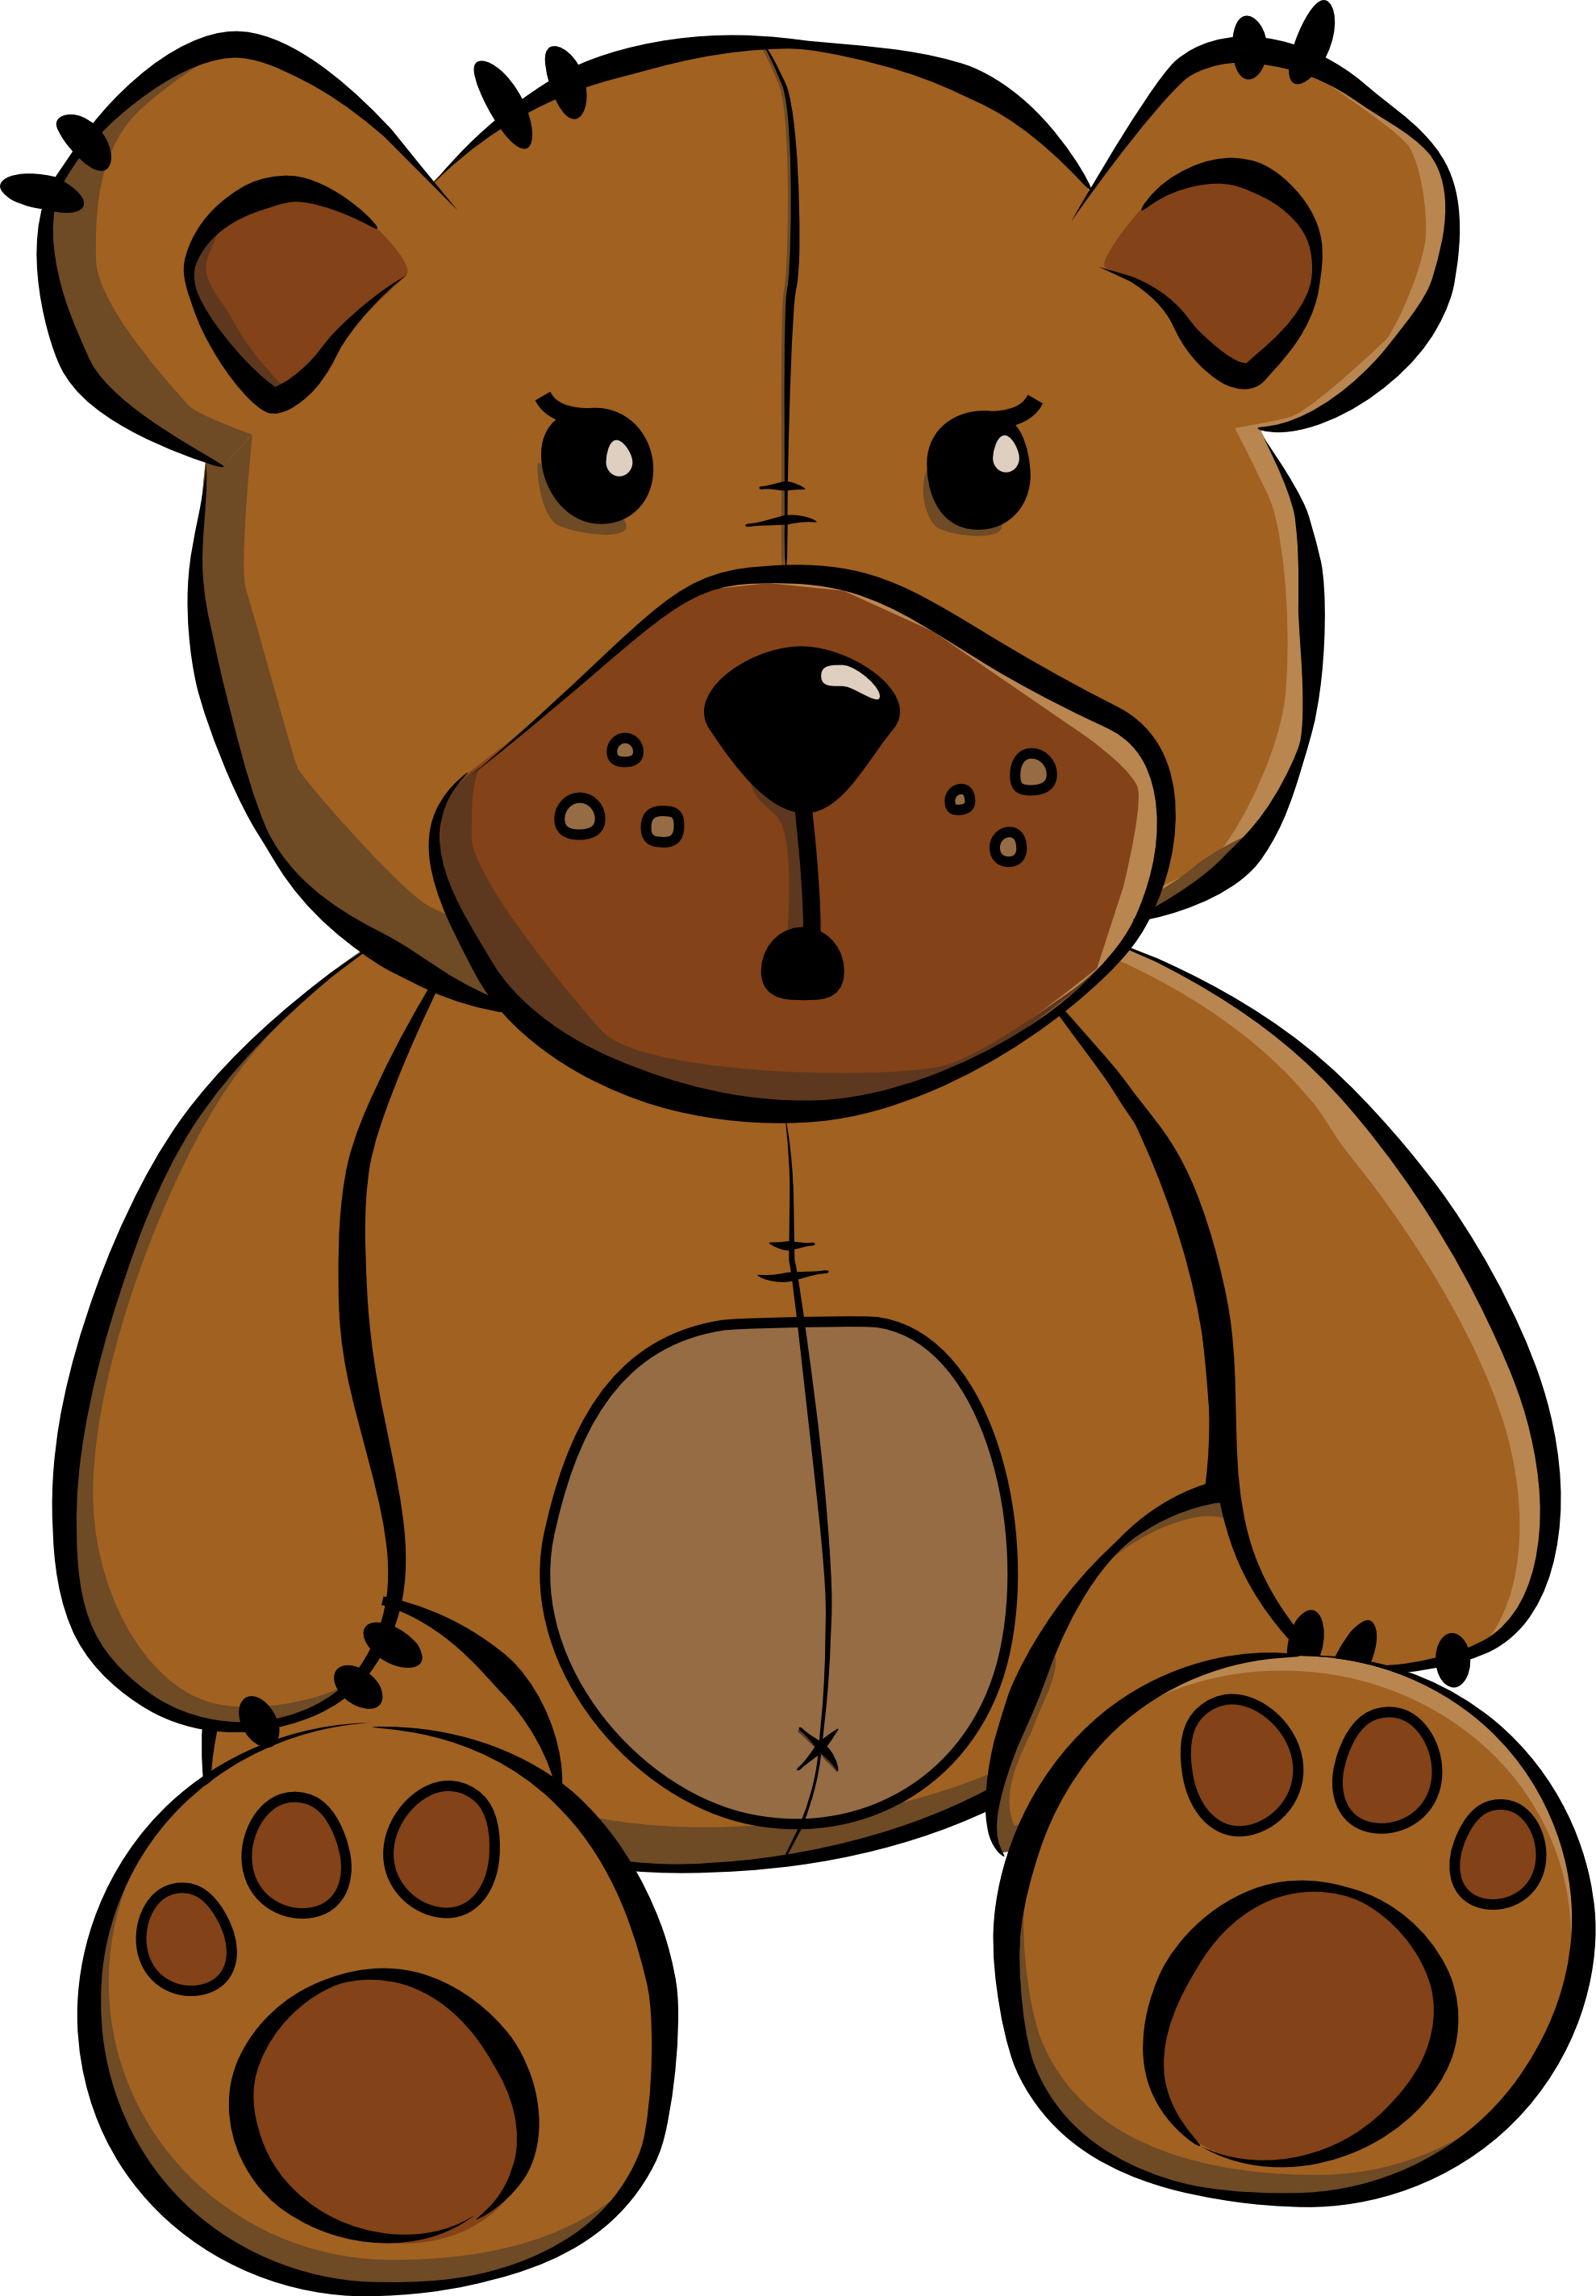 Cartoon teddy bear clipart - ClipartFox